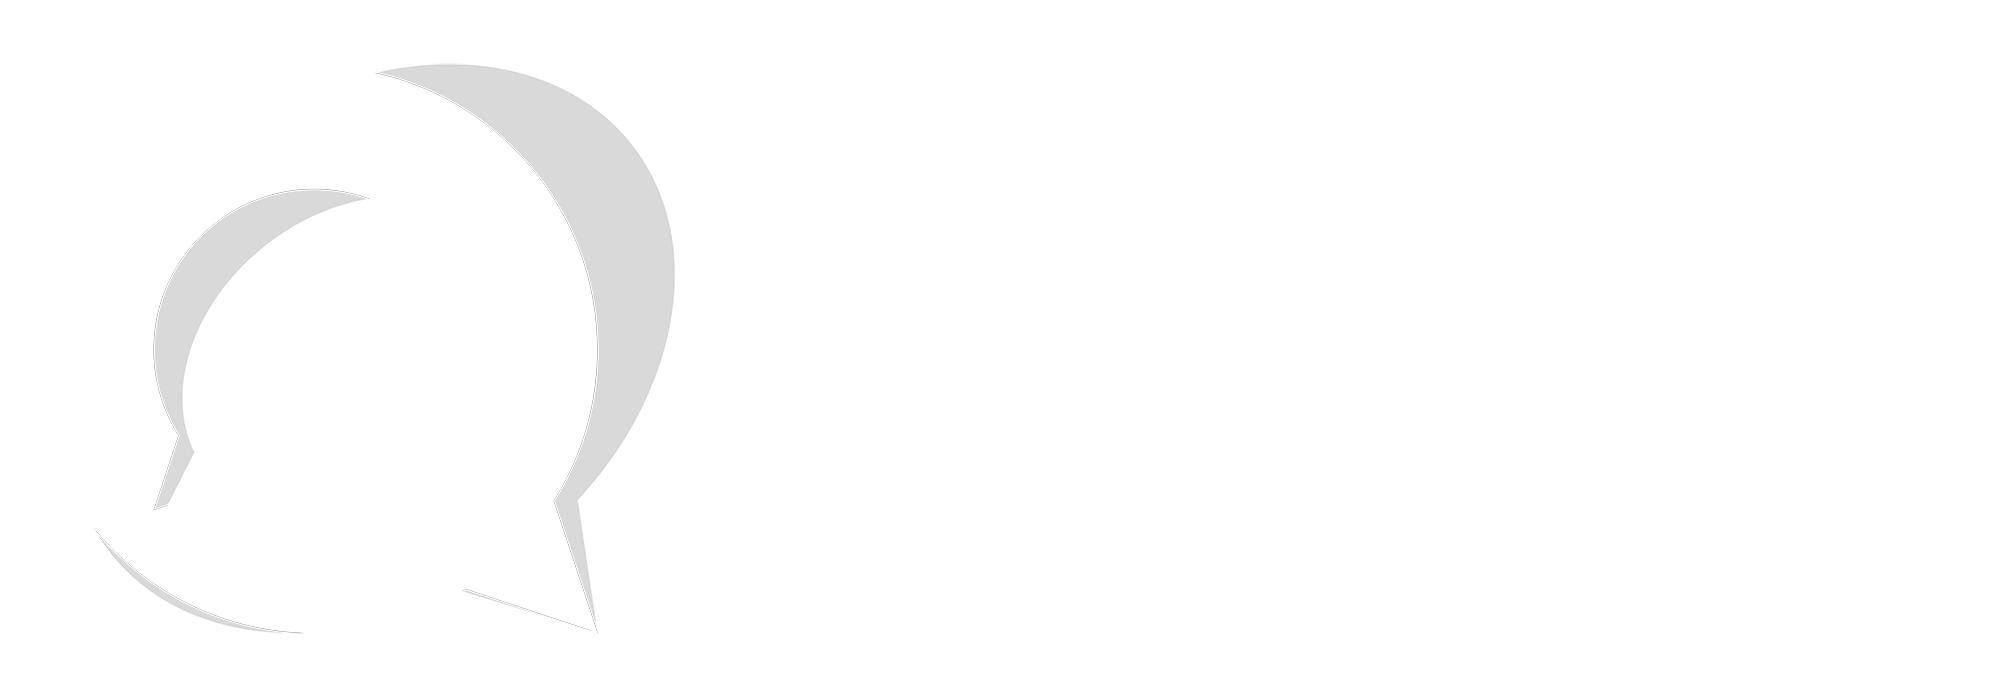 Logo-2020-full-white-panjang